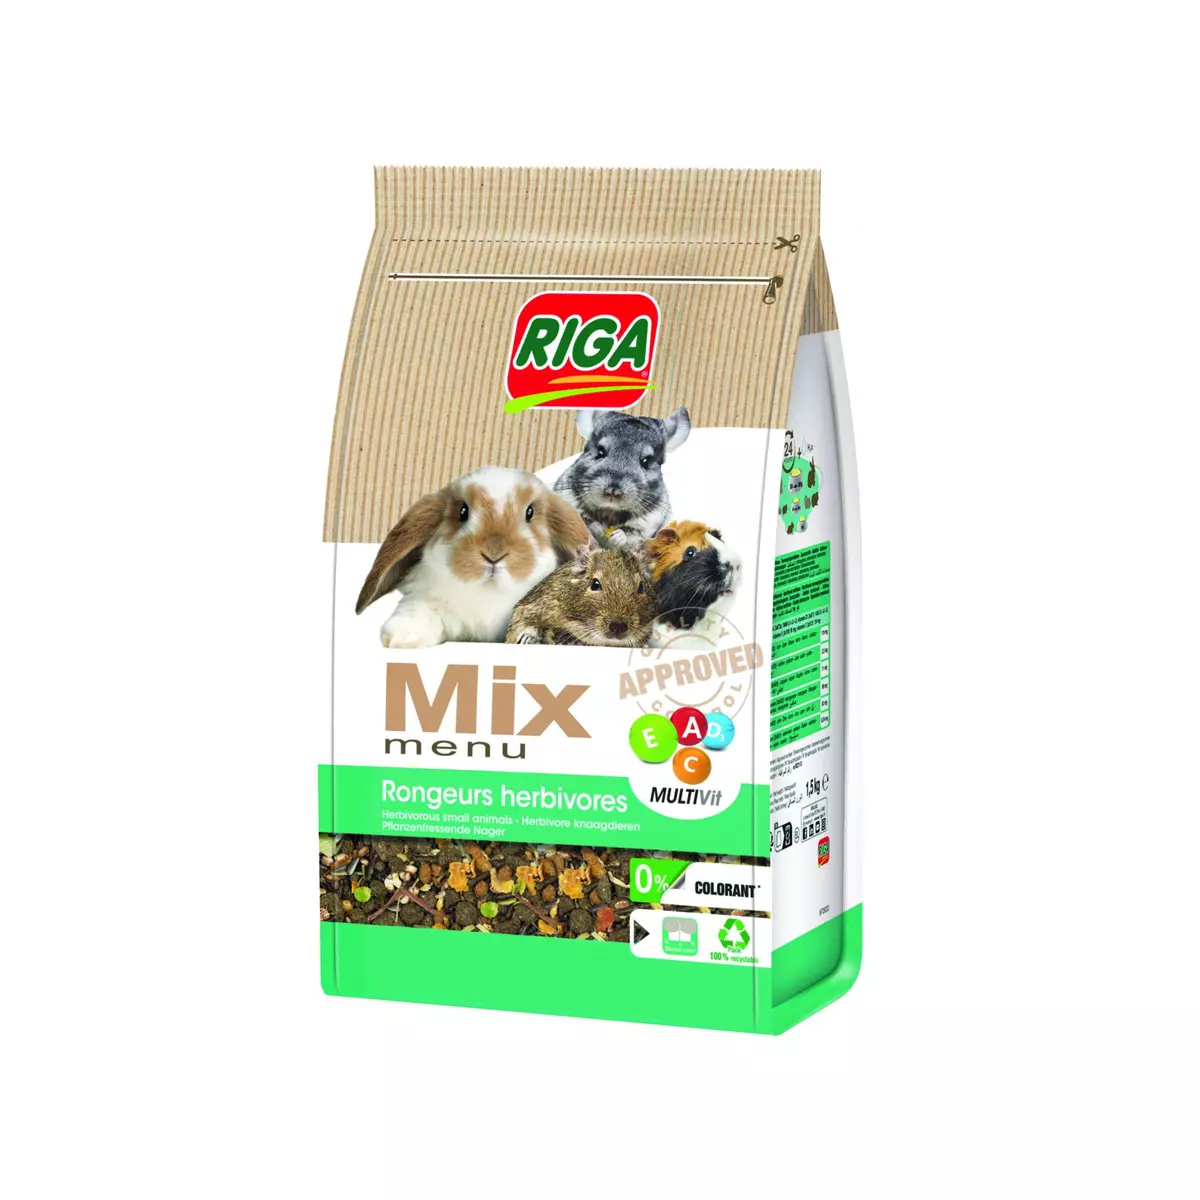 RIGA Mix menu nourriture pour rongeurs herbivores 1.5kg